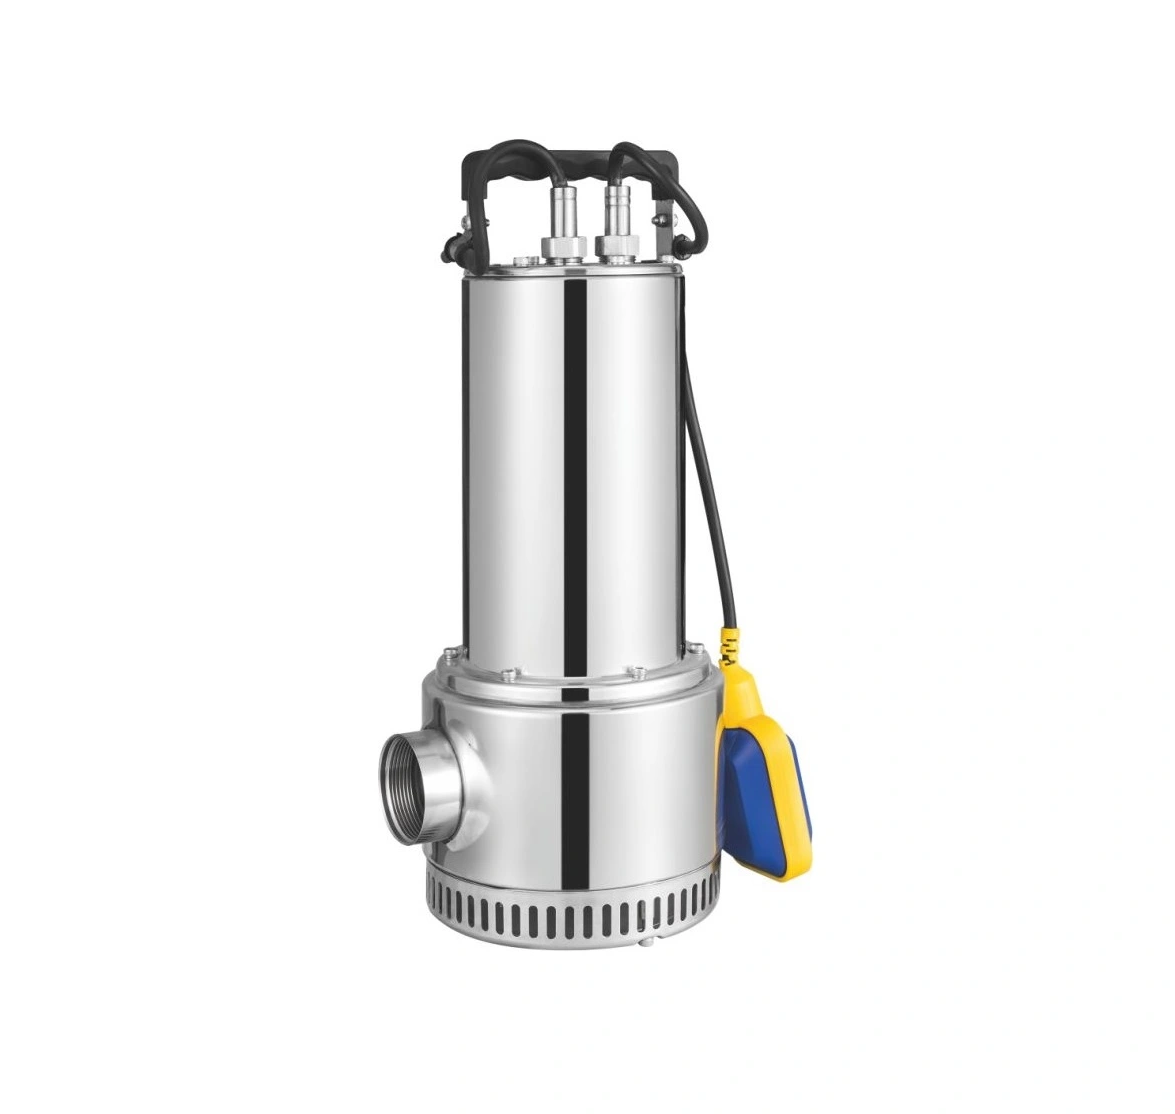 Pompa Air Baja Tahan Karat Seri QDX /WQD, Pompa Submersible Impeller Baja Tahan Karat untuk Penggunaan Taman dan Pengeringan Rumah